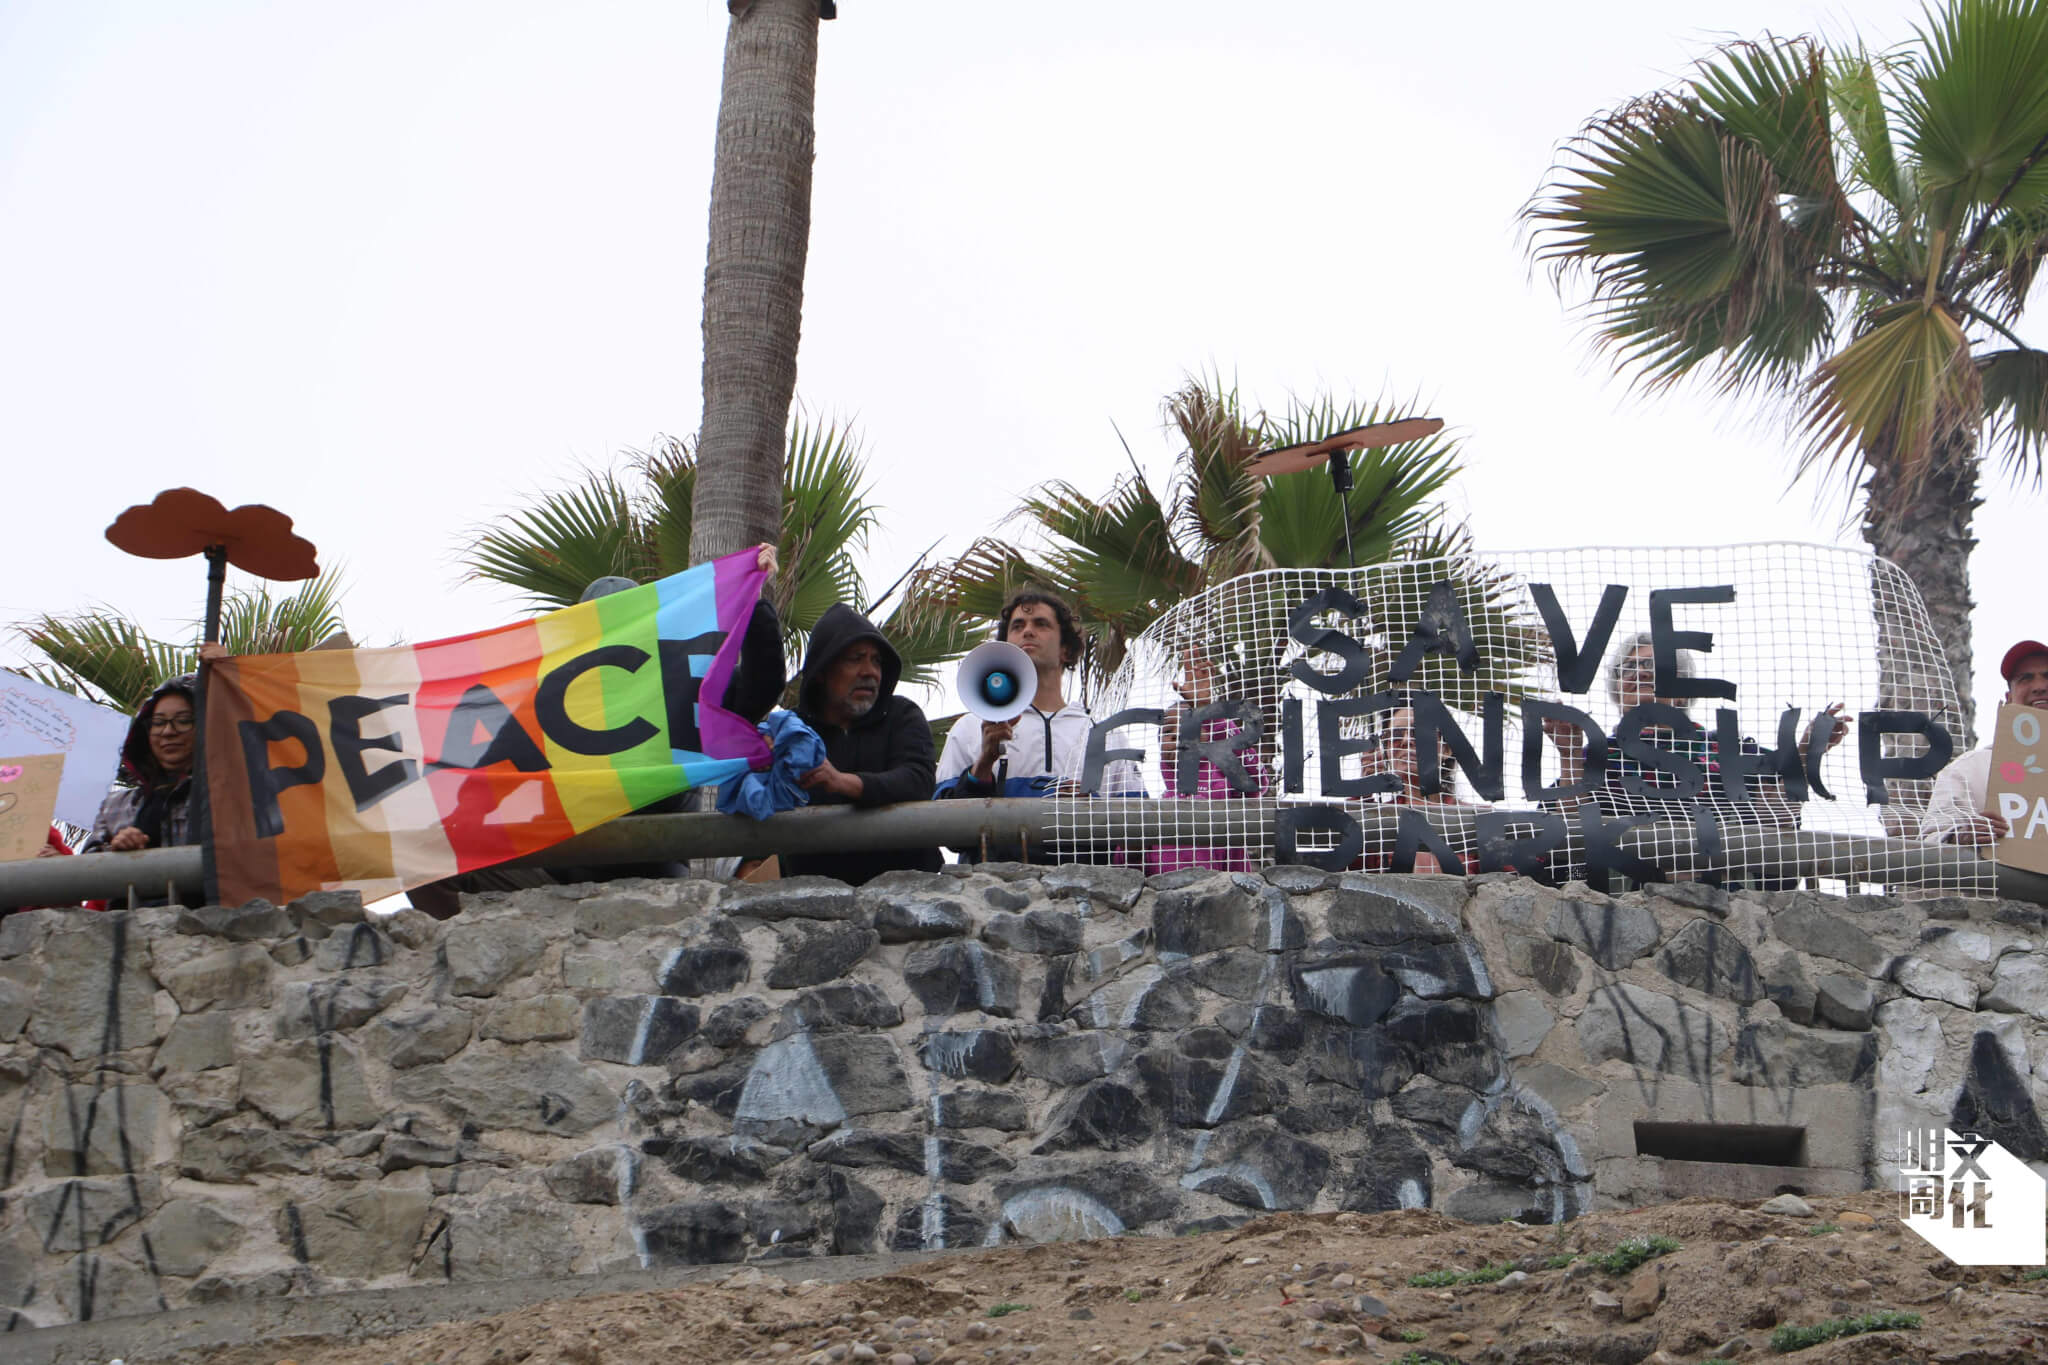 參與者手持印上「Peace」的彩虹旗、「Save Friendship Park」等標語，走到觀景台向聖地牙哥的參與者揮手。